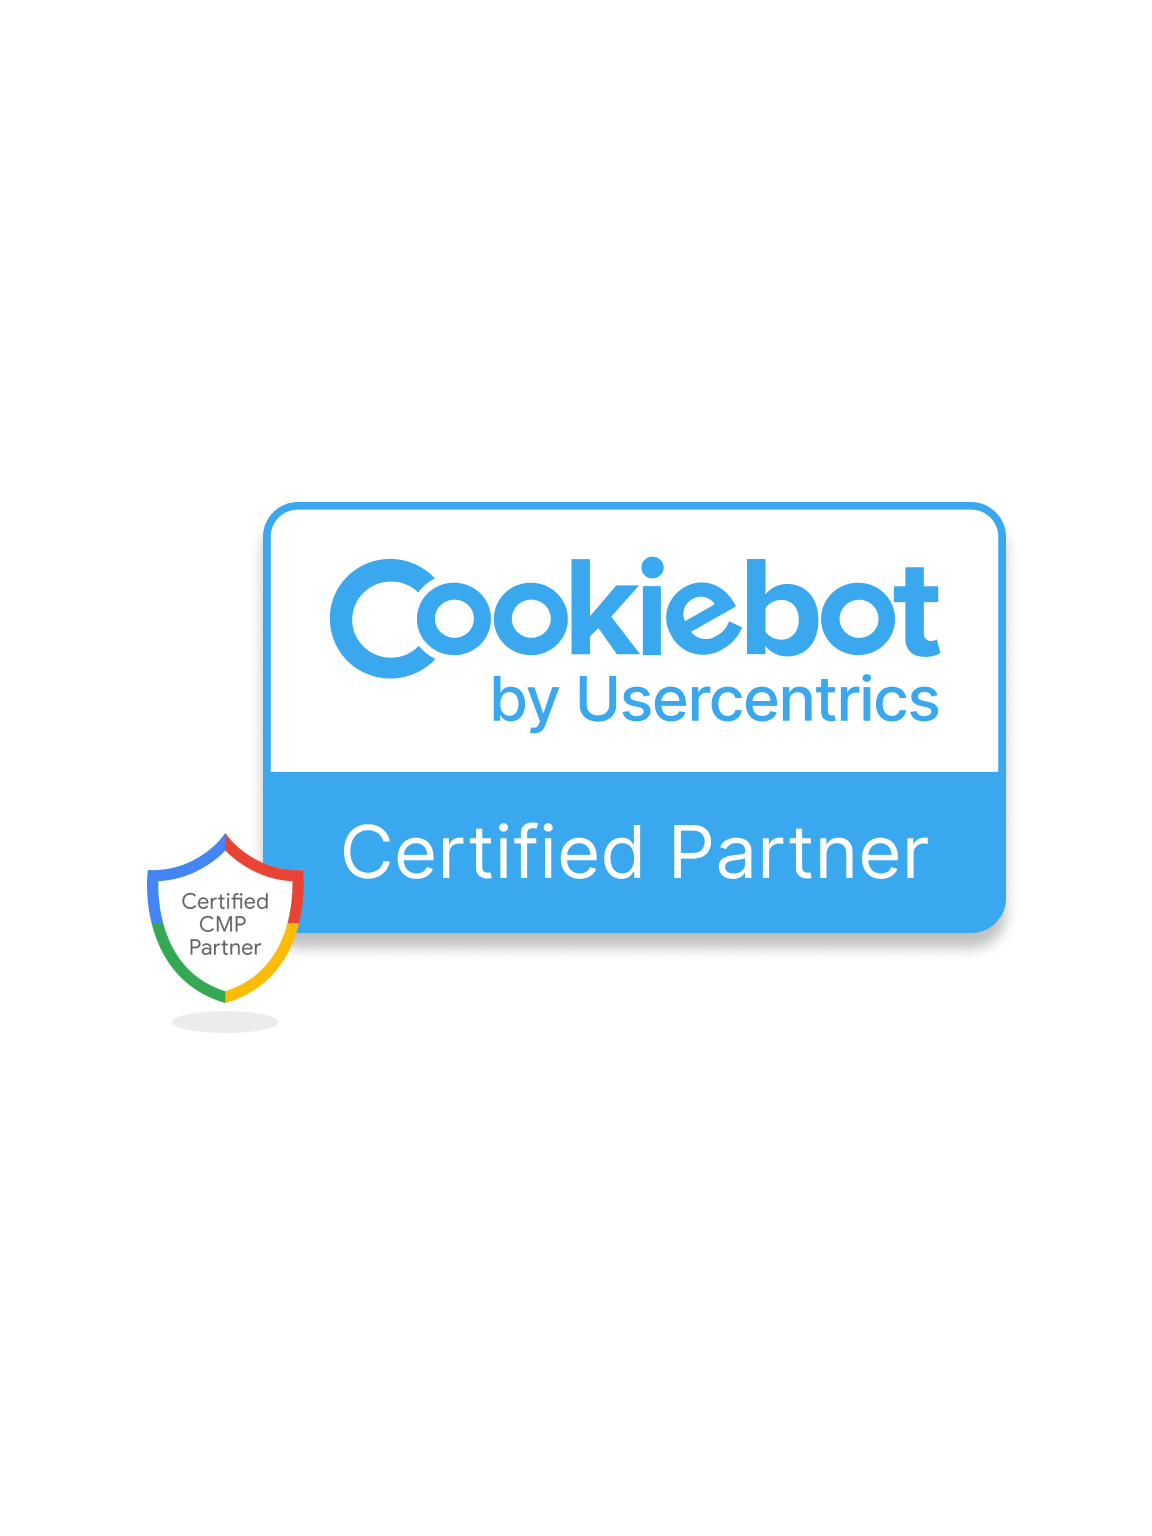 Cookiebot Partner Certified CMP Partner